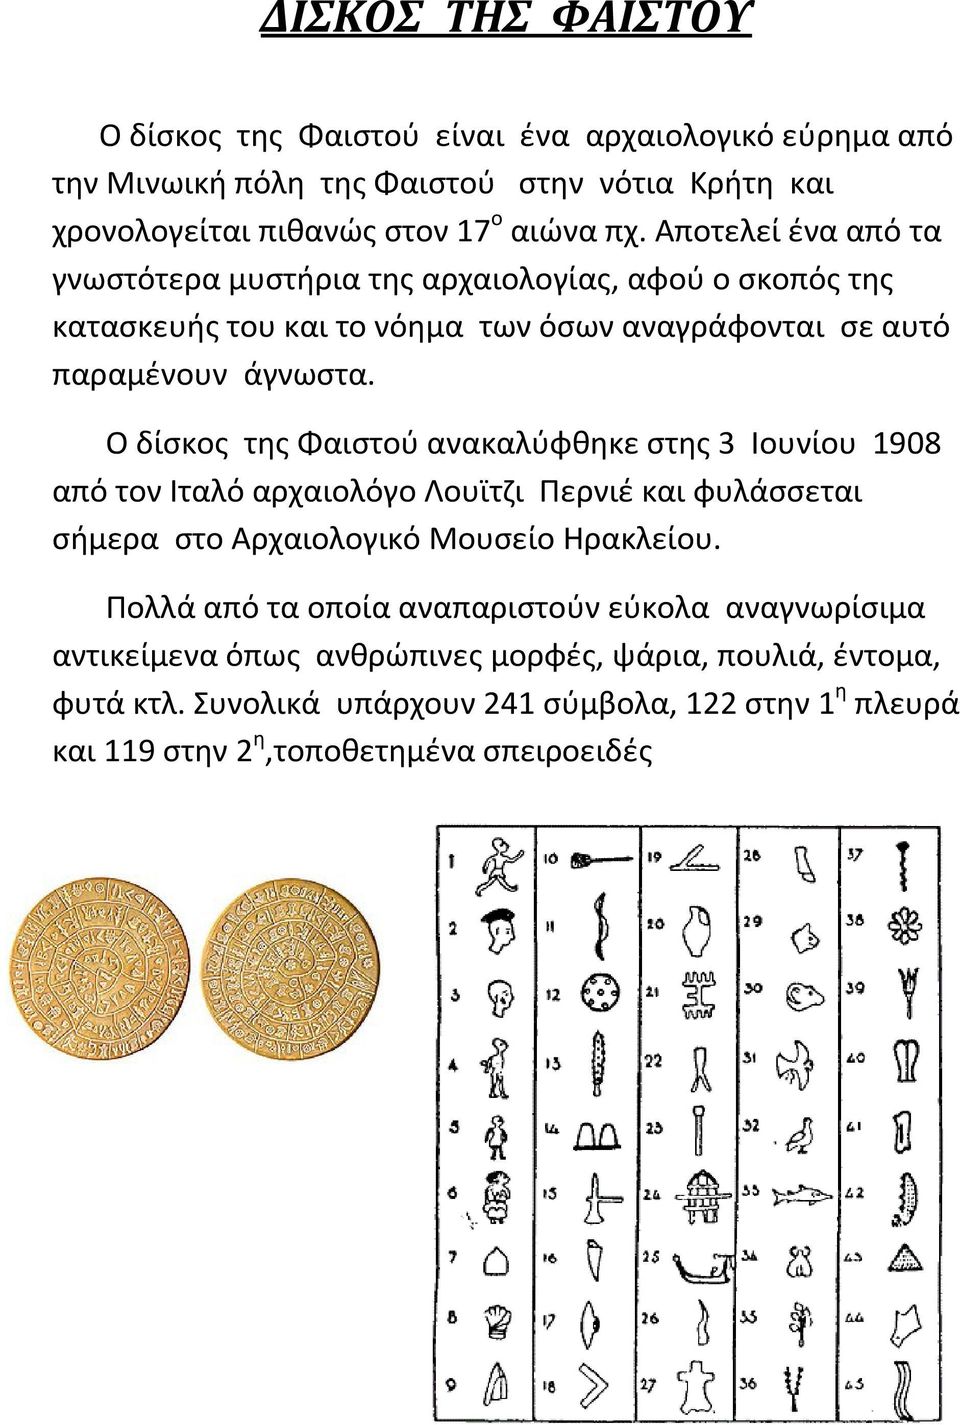 Ο δίσκος της Φαιστού ανακαλύφθηκε στης 3 Ιουνίου 1908 από τον Ιταλό αρχαιολόγο Λουϊτζι Περνιέ και φυλάσσεται σήμερα στο Αρχαιολογικό Μουσείο Ηρακλείου.